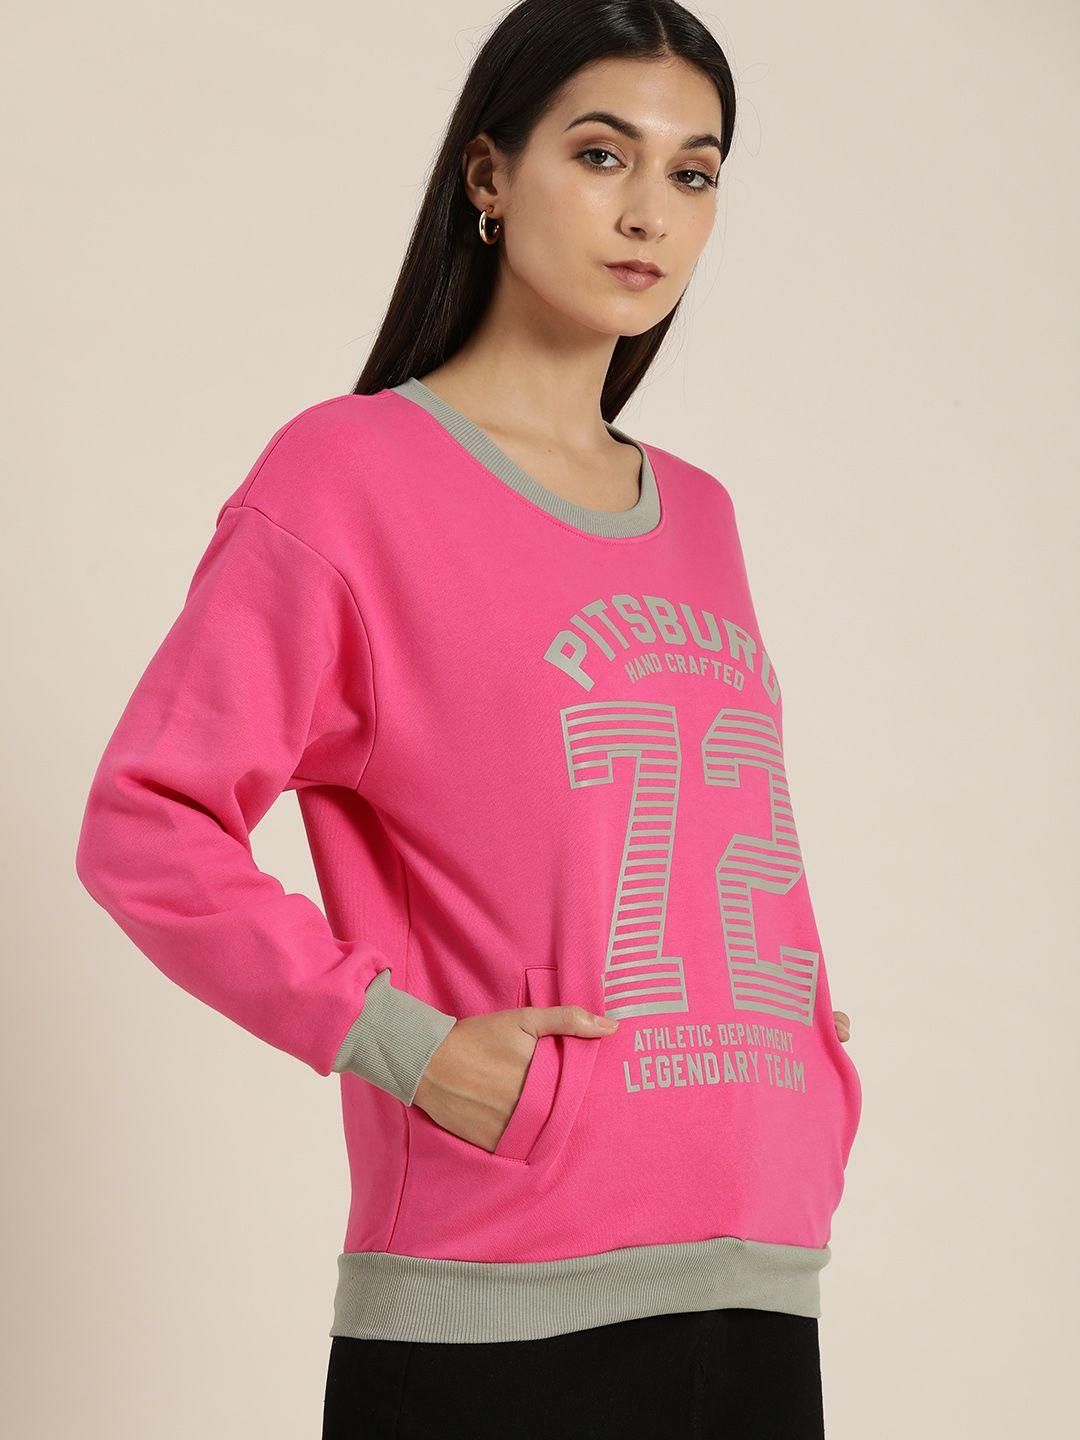 Dillinger Women's Pink Typographic Oversized Sweatshirt